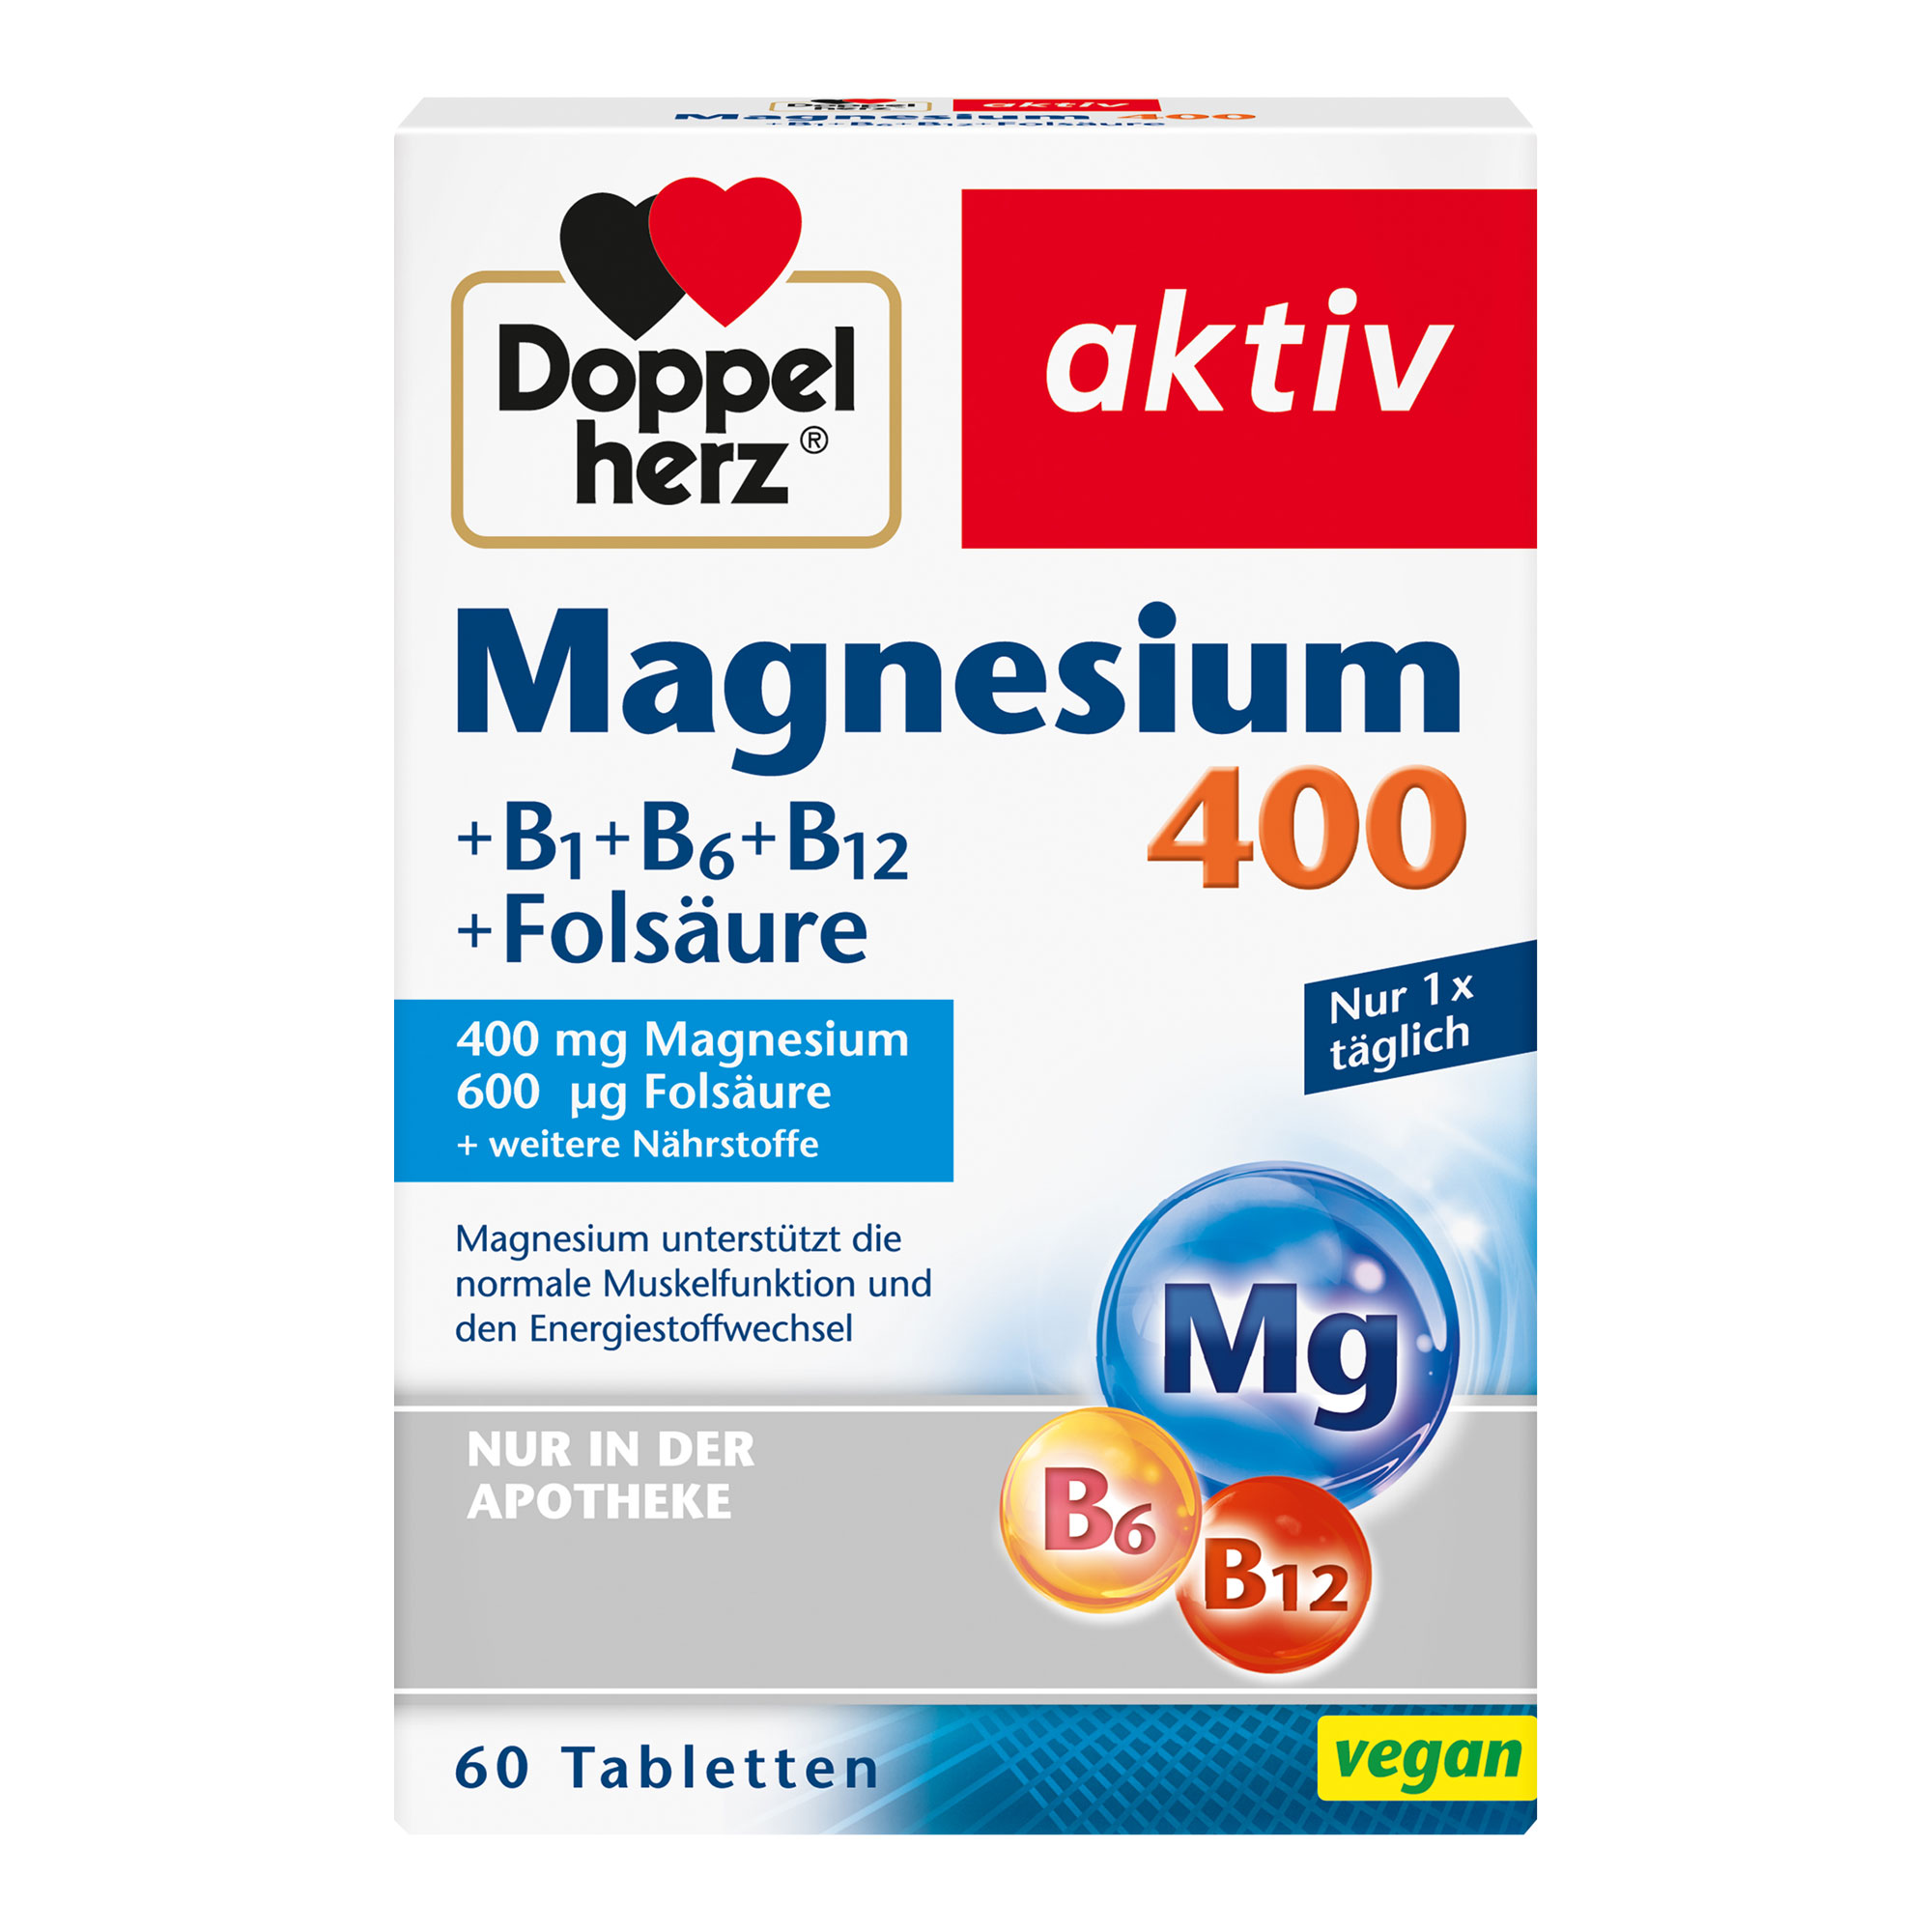 Nahrungsergänzungsmittel mit Magnesium und B-Vitaminen.